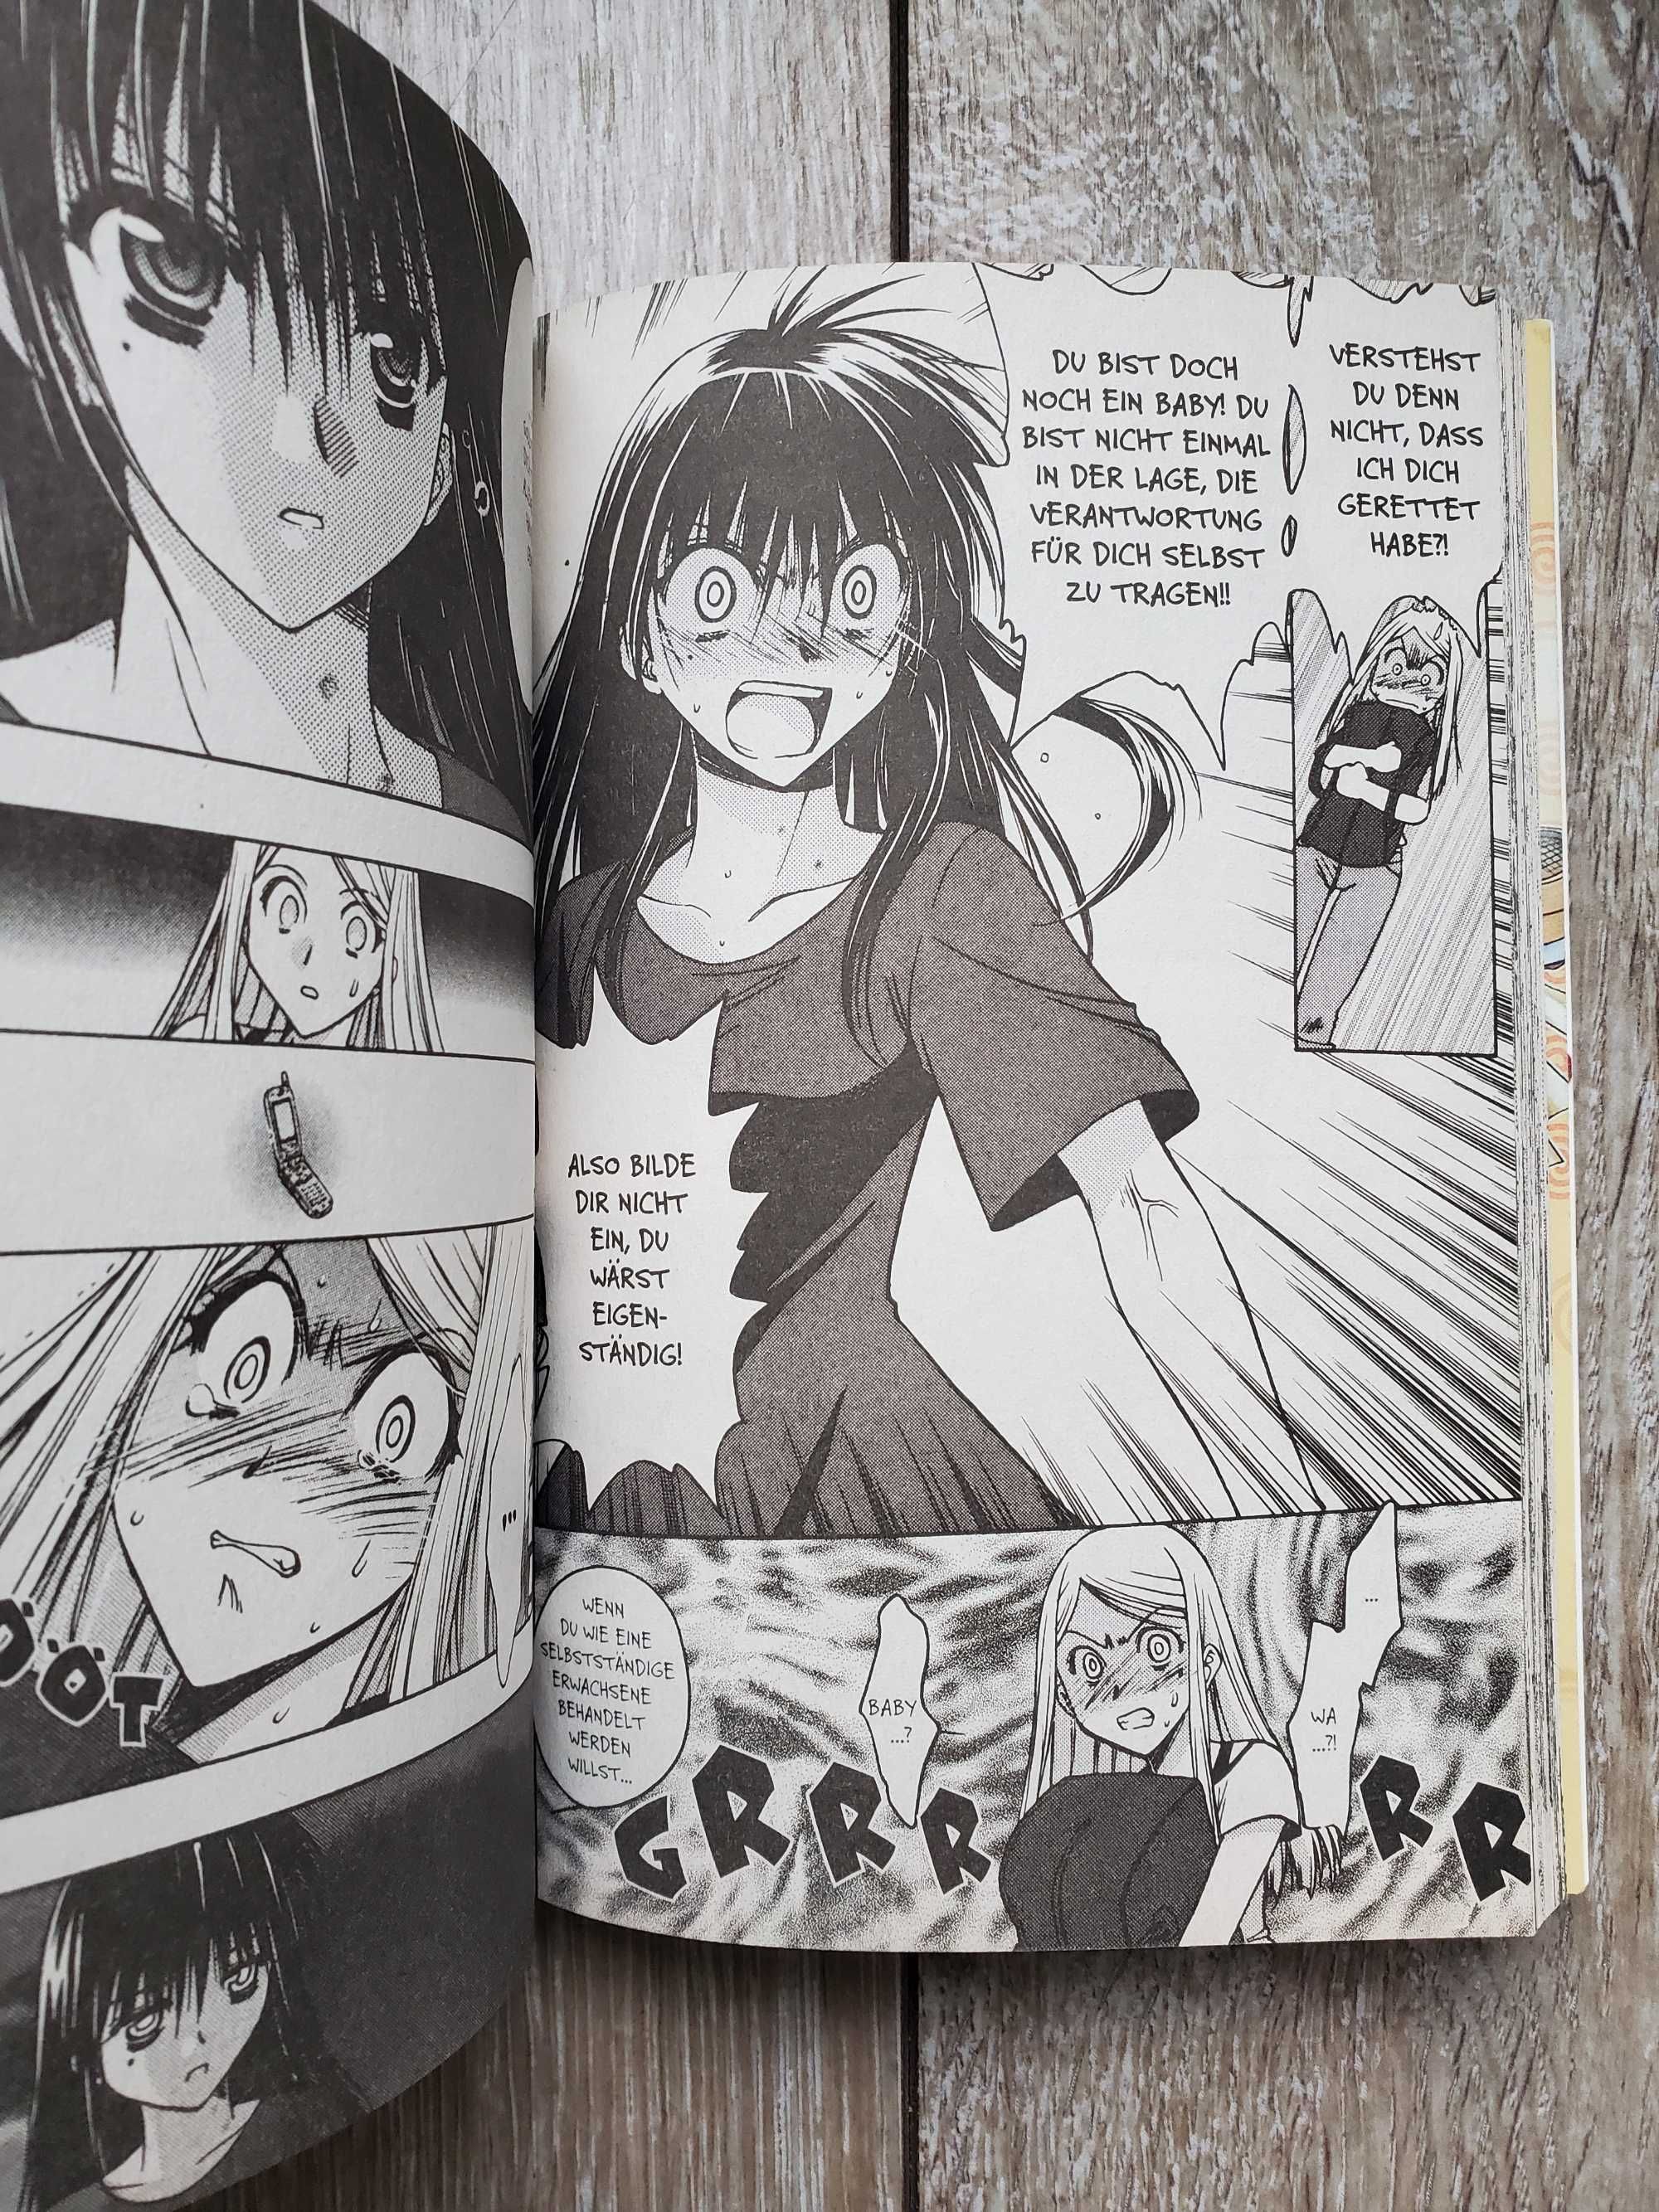 Manga: Cheeky Vampire vol 3 IN GERMANA